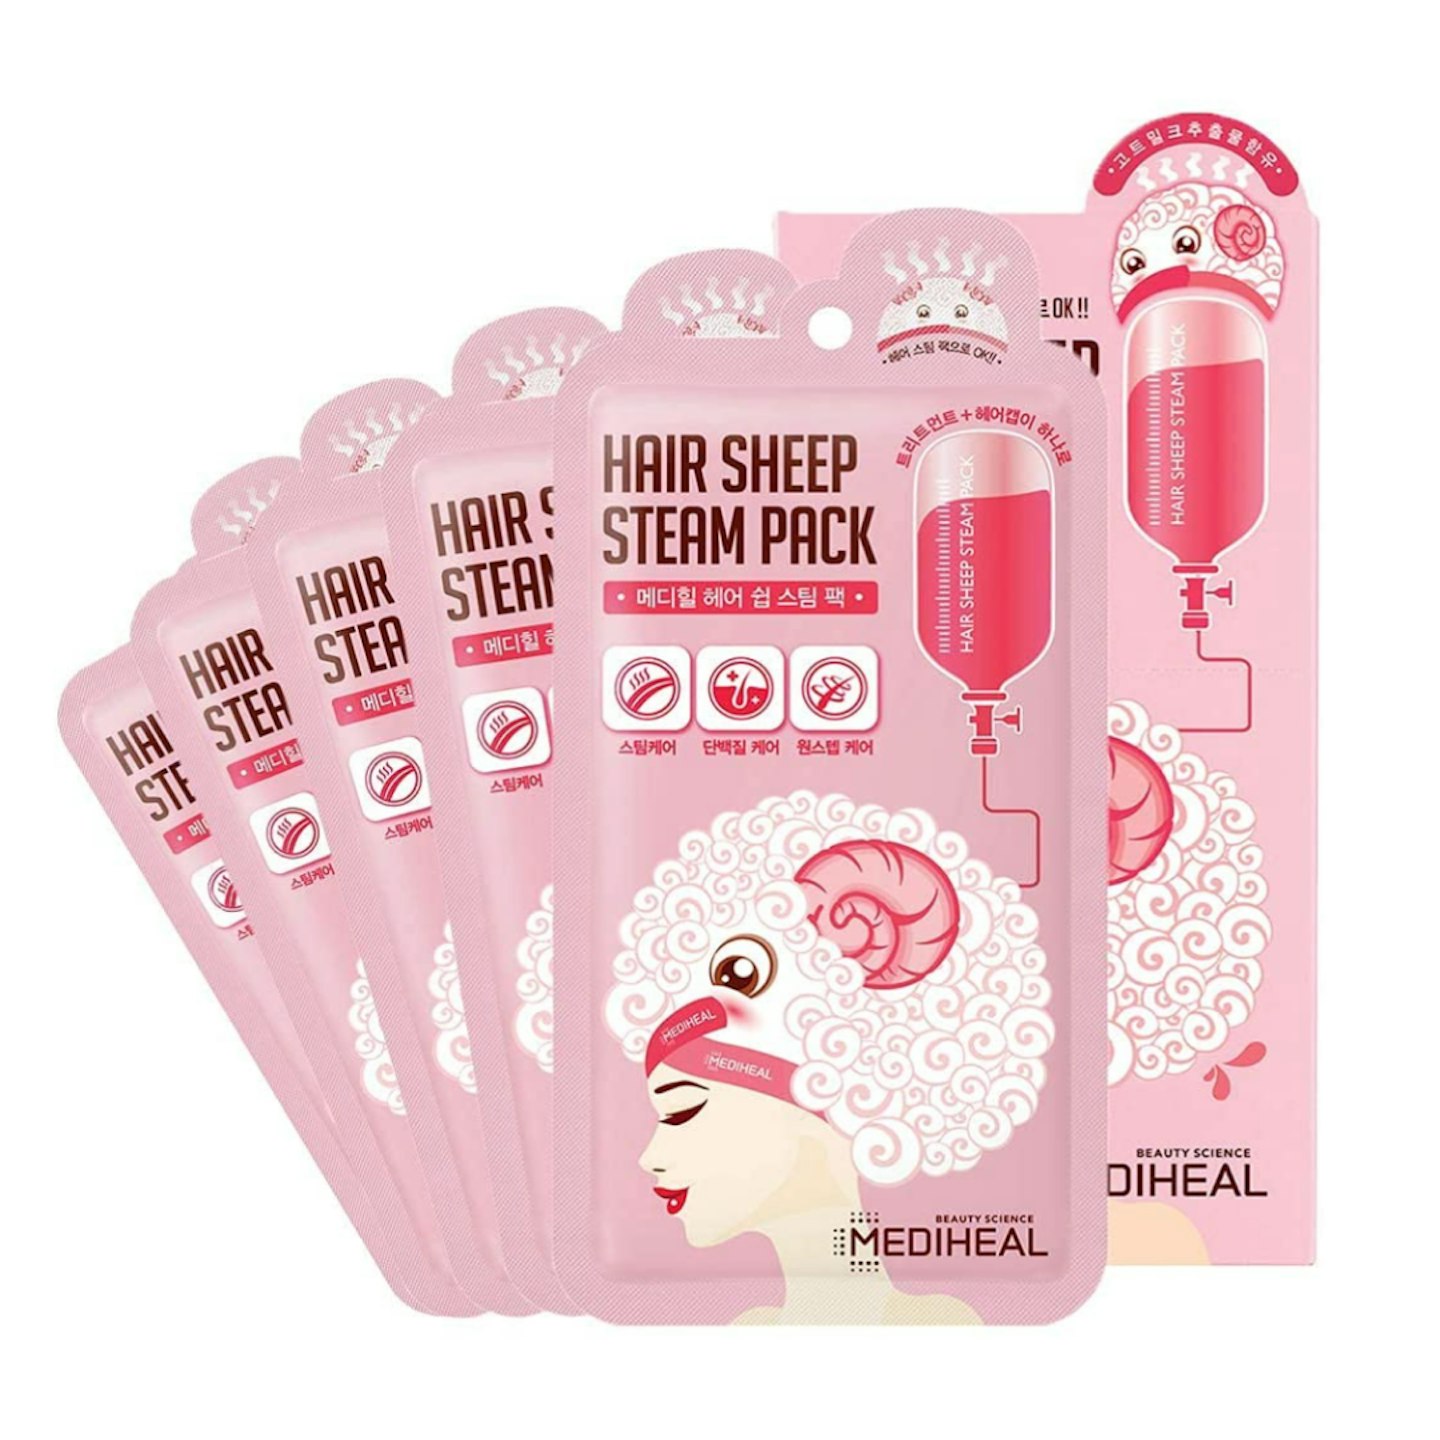 MEDIHEAL Hair Sheep Steam Pack 5 Sheets, Hair Mask for Intense Hair Repair